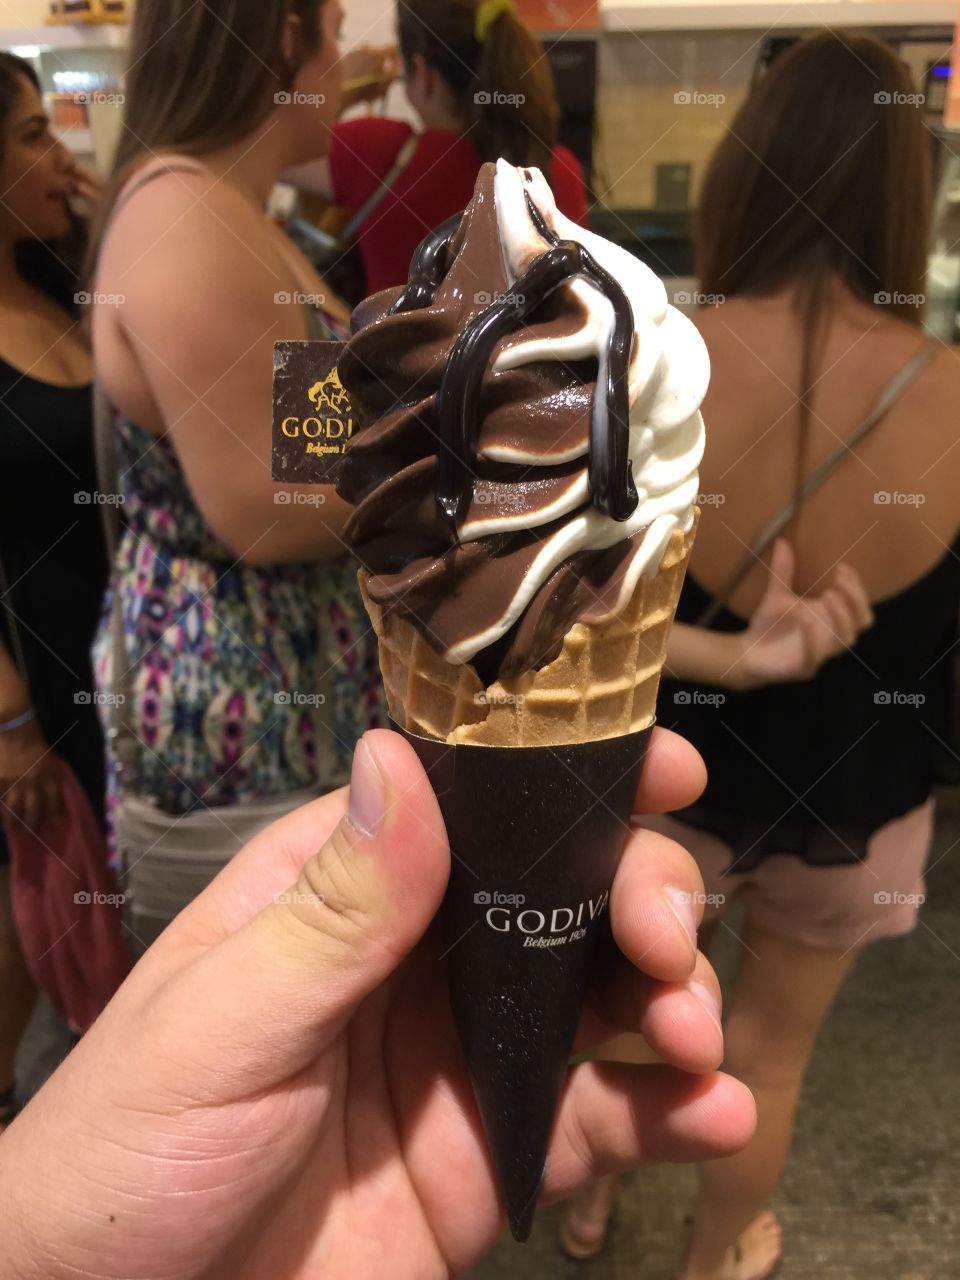 The perfect cone